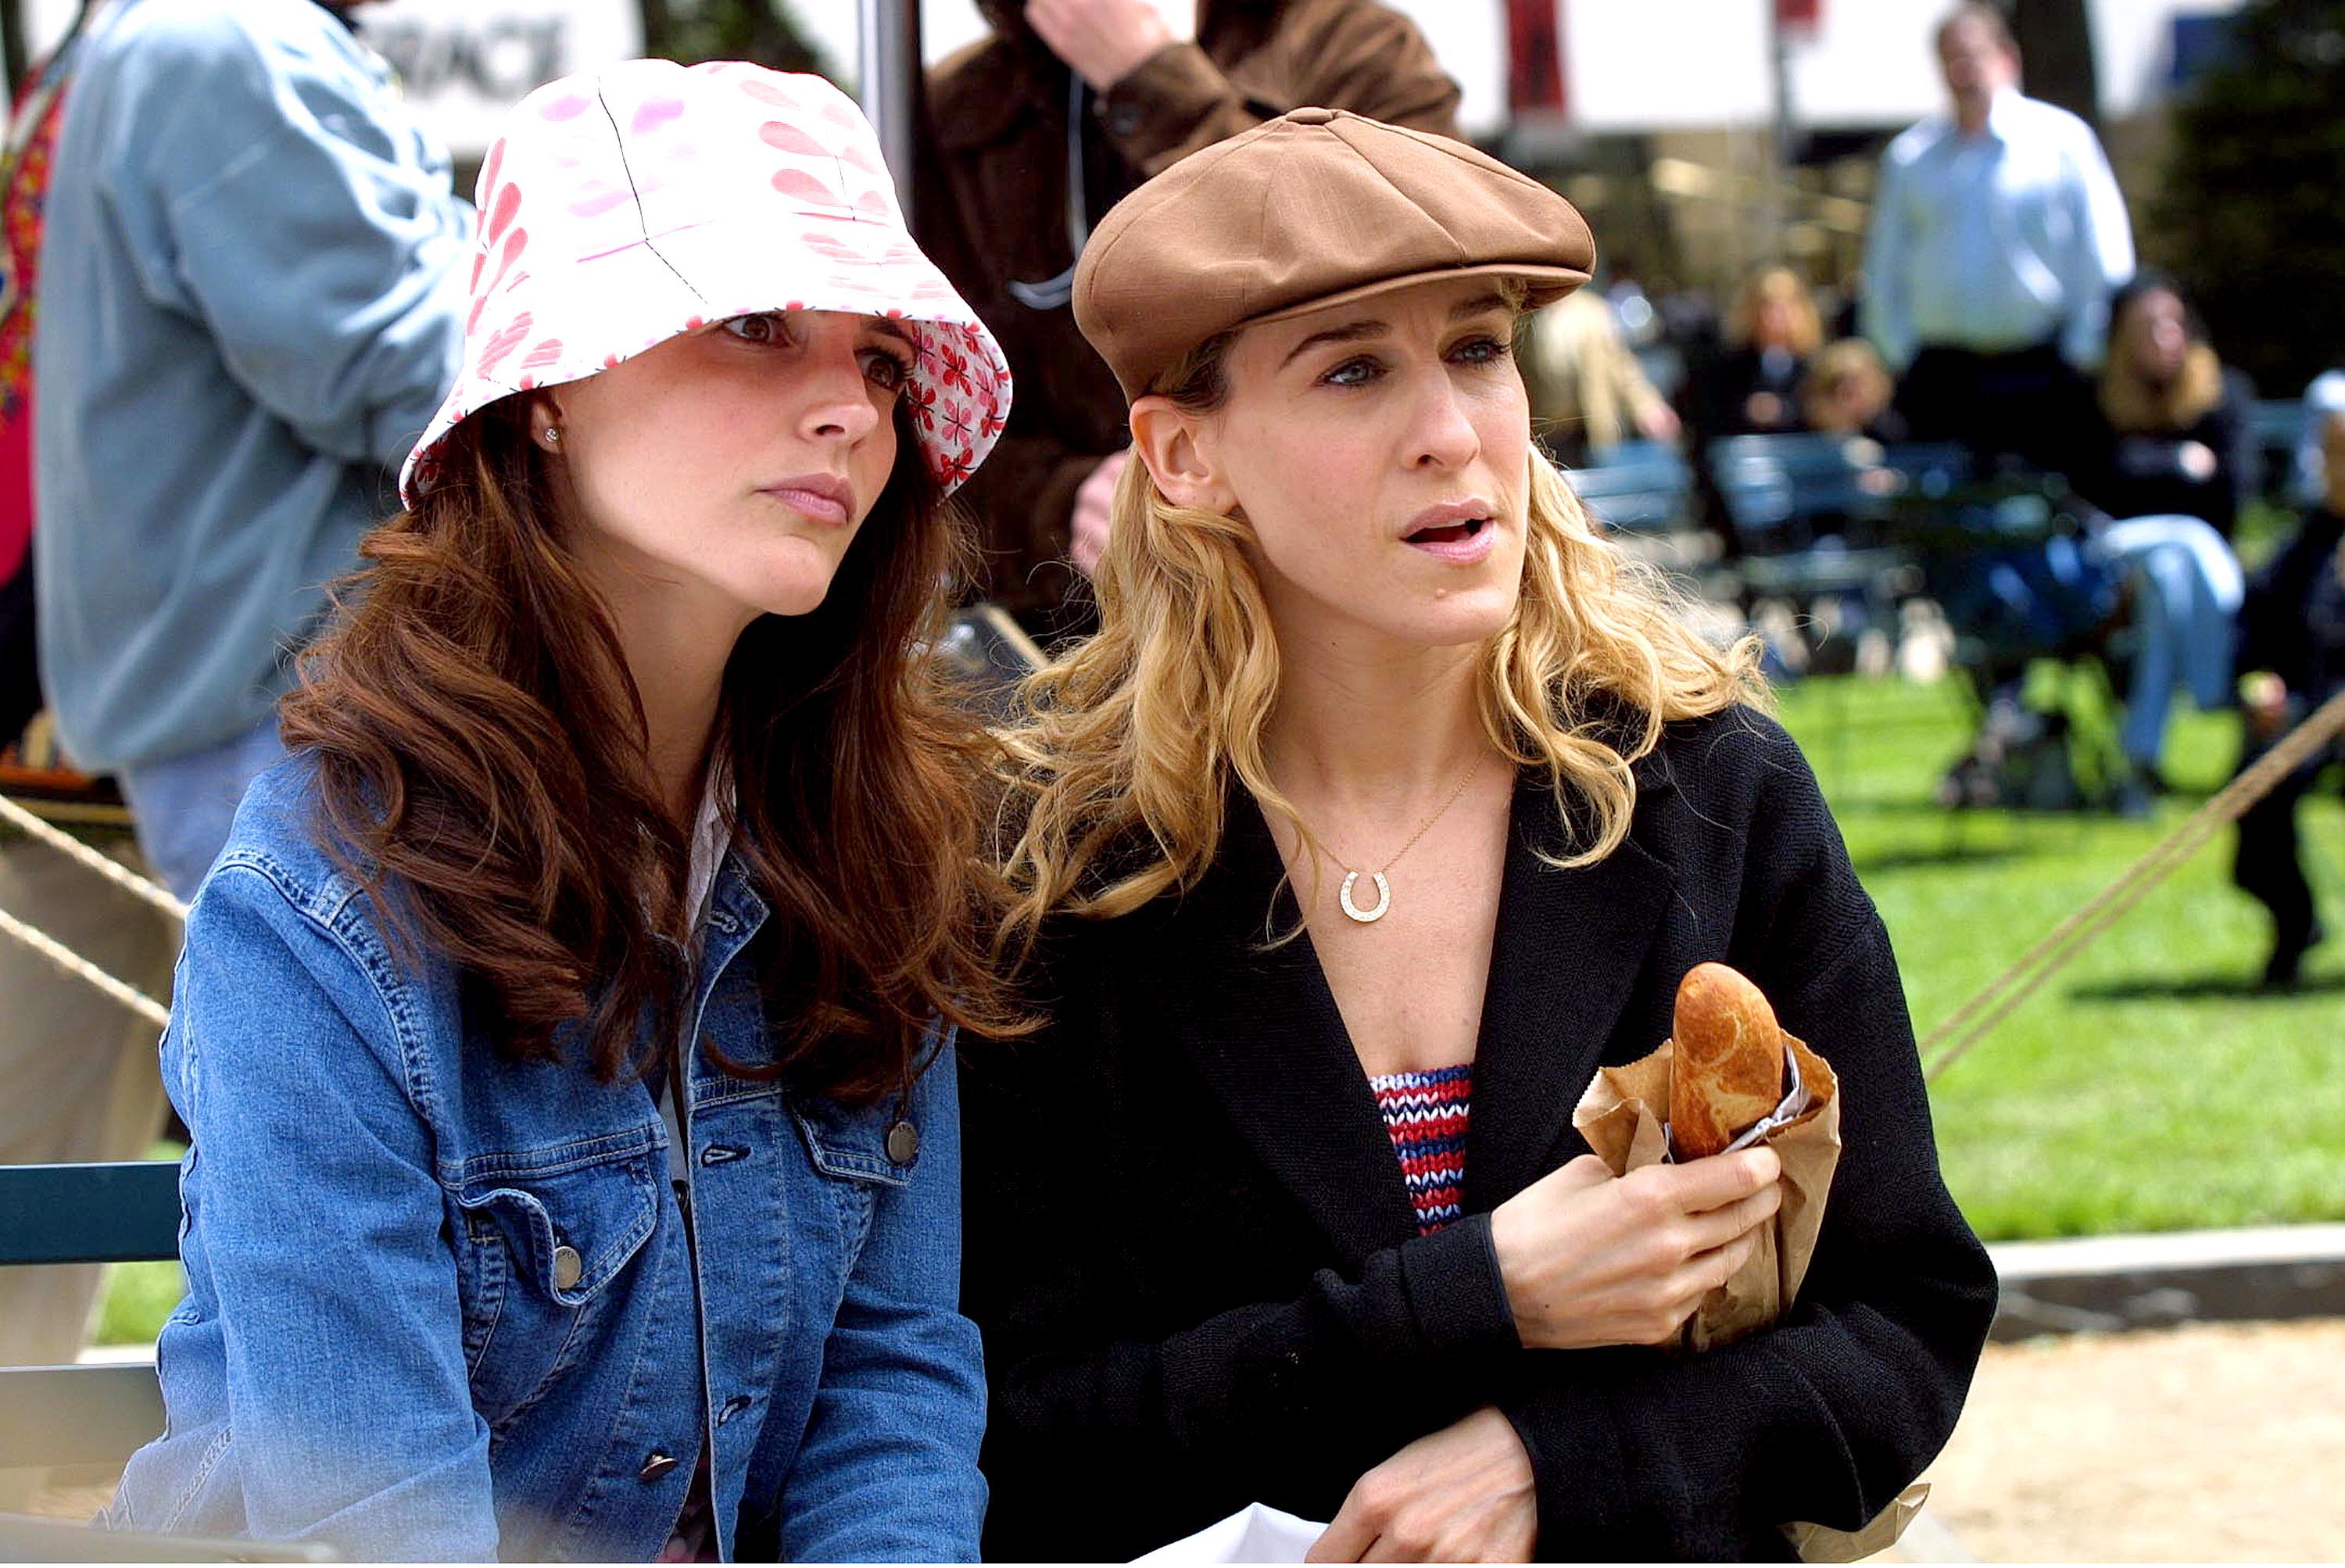 Kristin Davis y Sarah Jessica Parker vistas en el rodaje de "Sex & the City" en Central Park el 8 de mayo de 2001 en Nueva York. | Fuente: Getty Images